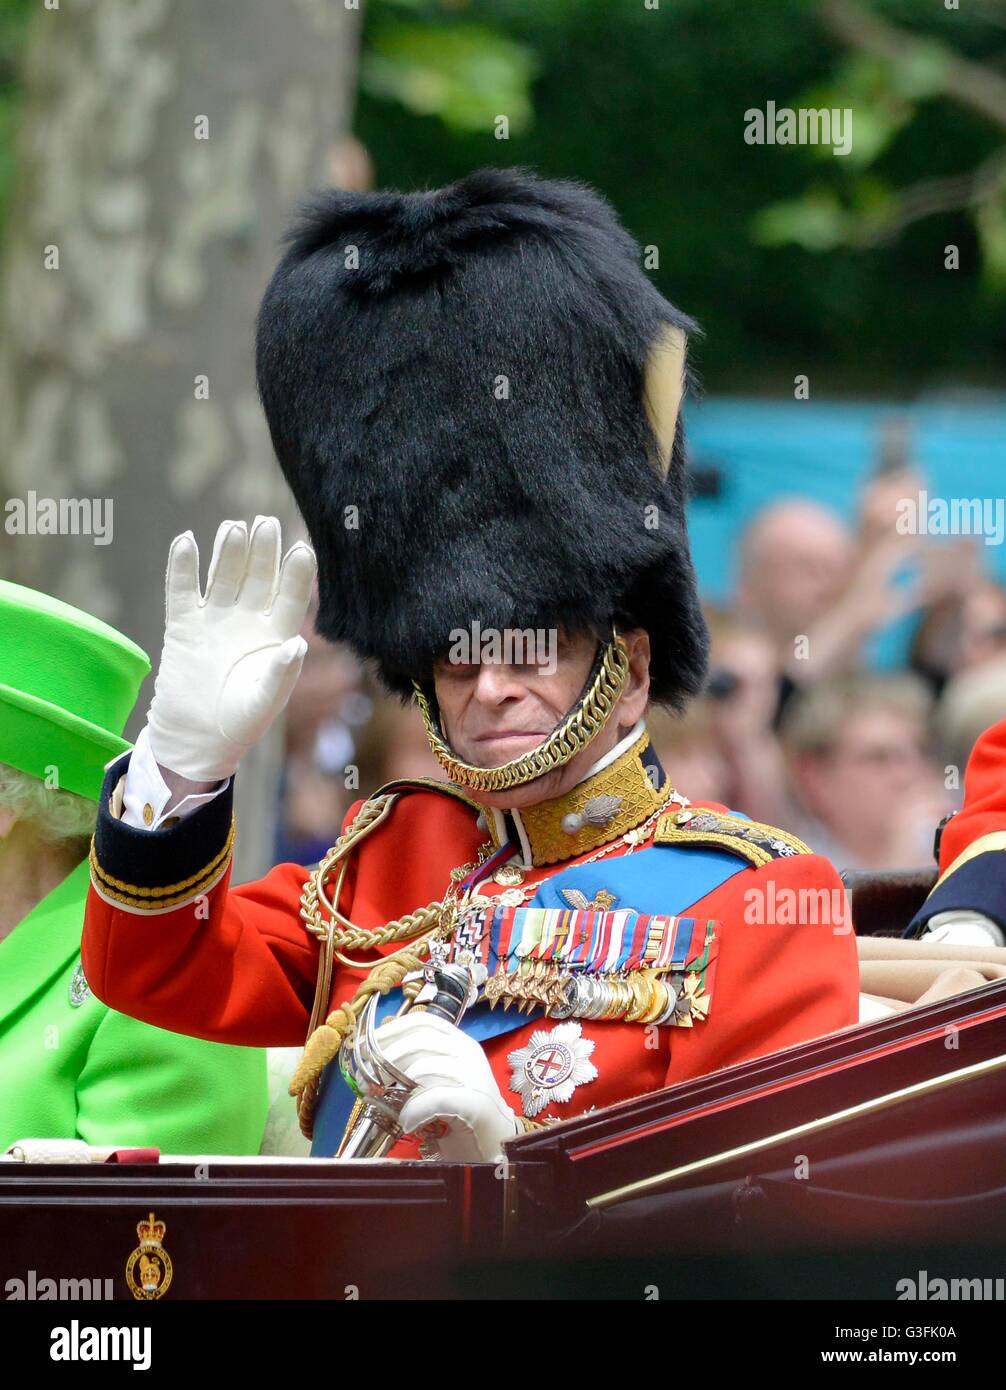 Londres, Reino Unido. 11 de junio, 2016. Trooping El Color - El desfile de cumpleaños de la Reina. El Príncipe Philip Crédito: Dorset Media Service/Alamy Live News Foto de stock